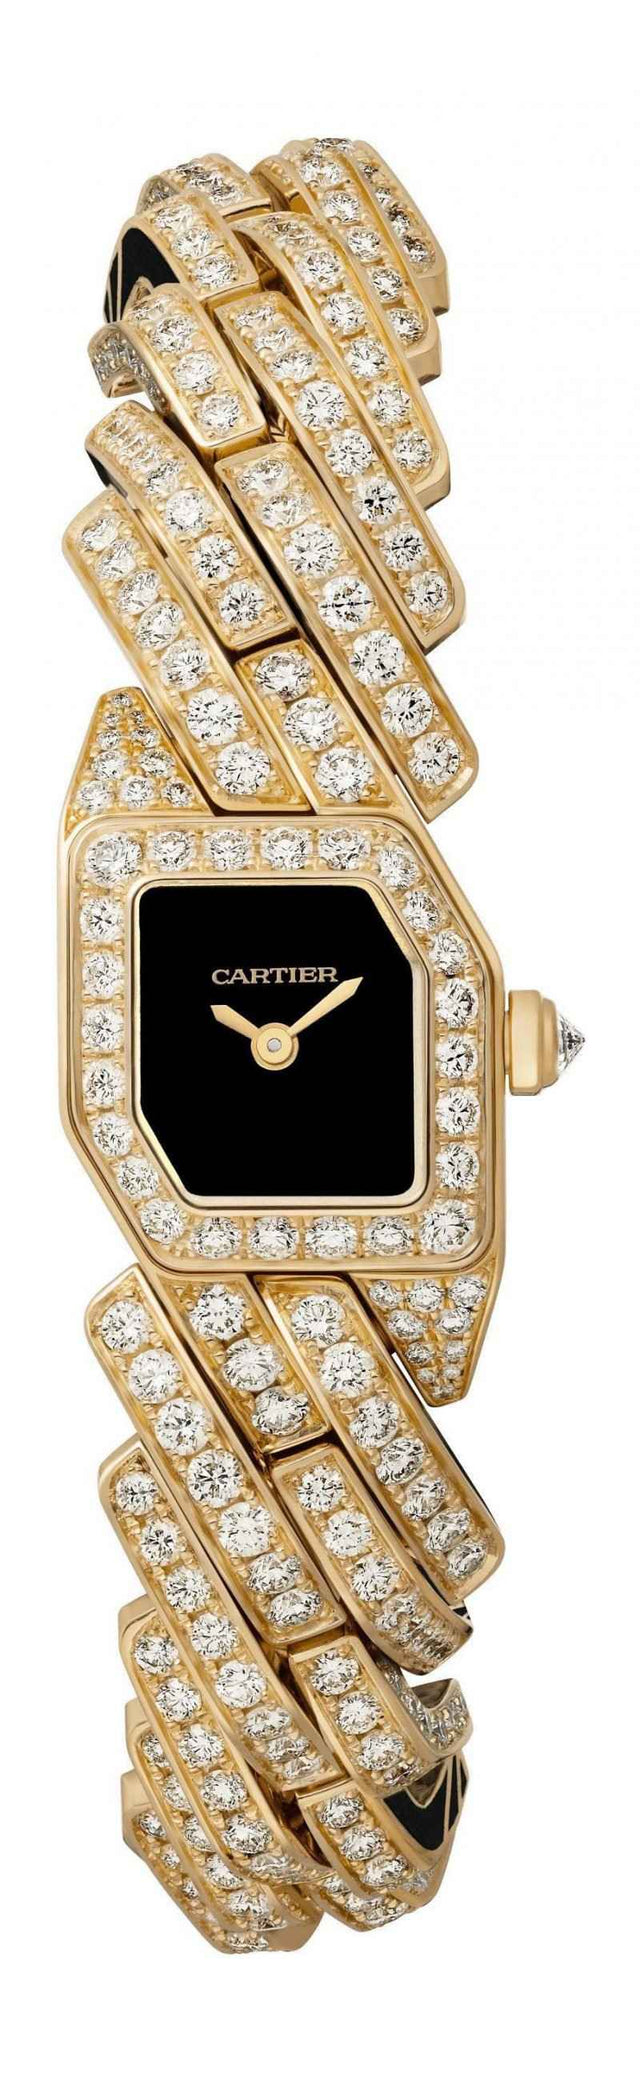 Cartier Maillon de Cartier Woman's watch WJBJ0006